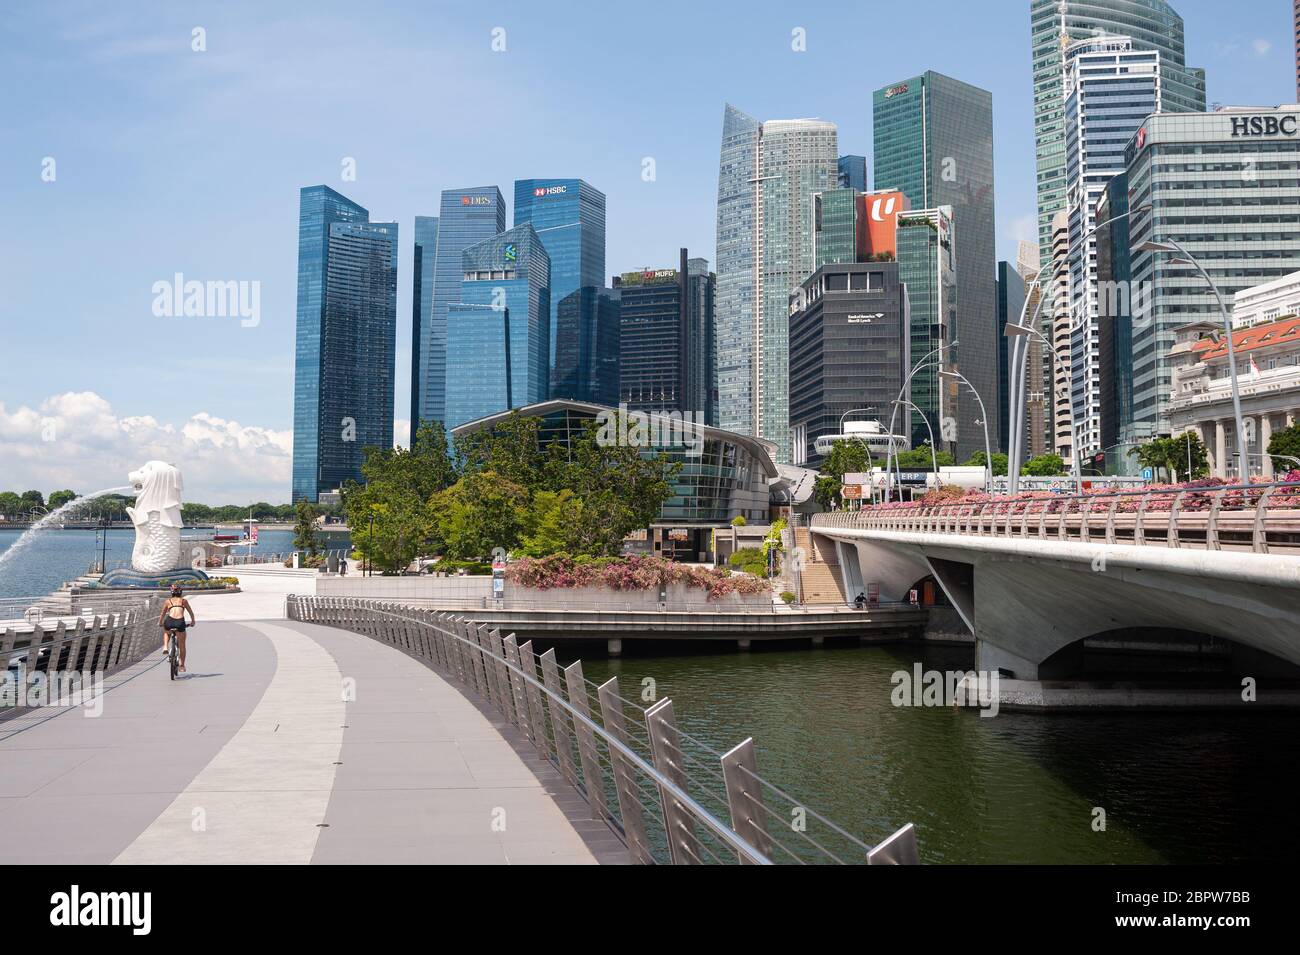 19.05.2020, Singapur, Republik Singapur, Asien - Blick von der Jubilee Bridge auf den verlassenen Merlion Park am Ufer des Singapore River. Stockfoto